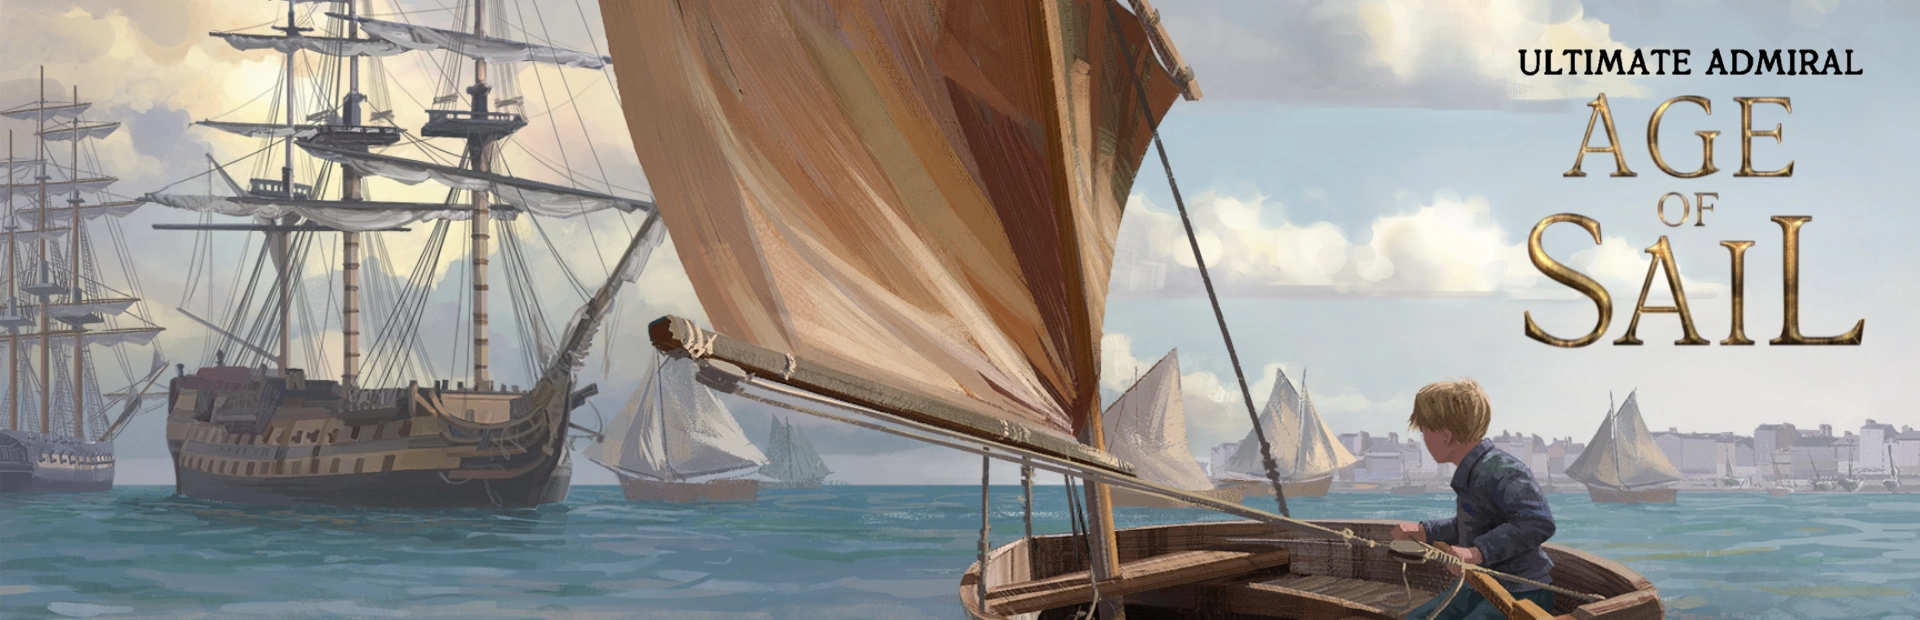 دانلود بازی Ultimate Admiral Age of Sail برای کامپیوتر | گیمباتو